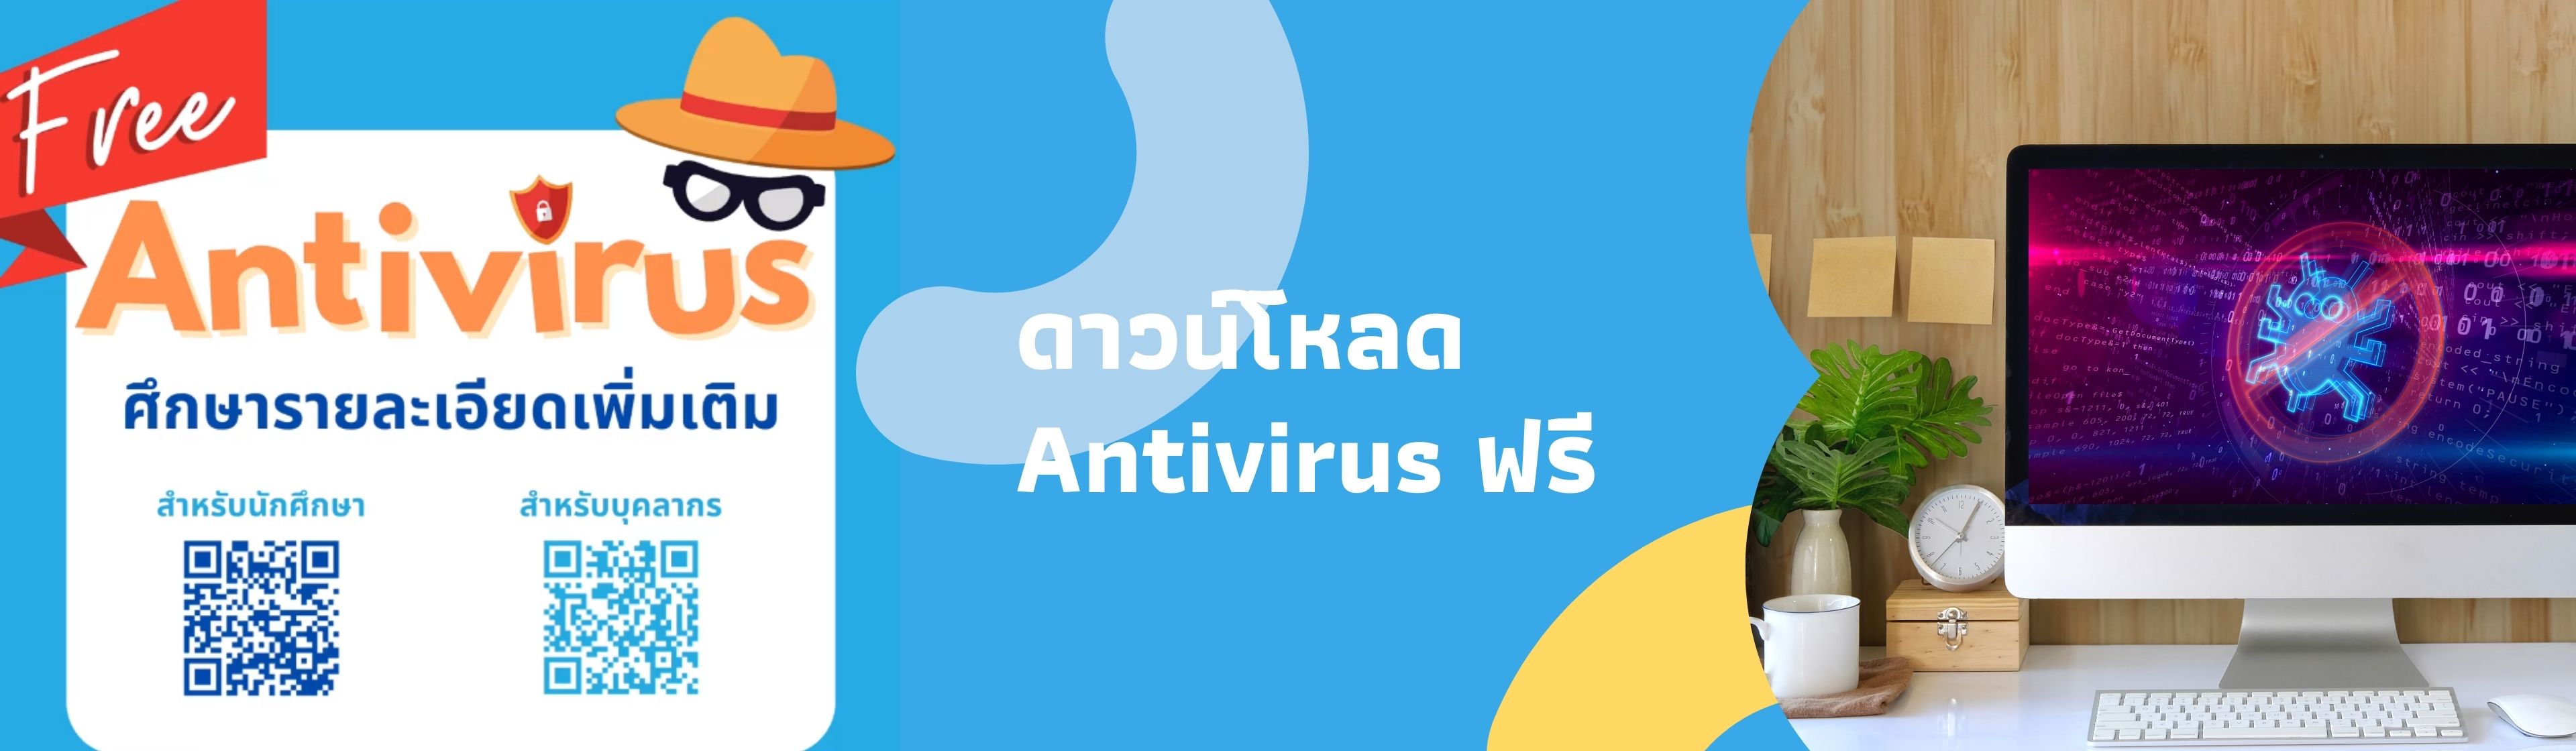 สำนักบริการเทคโนโลยีสารสนเทศ เปิดบริการ ดาวน์โหลด Antivirus ฟรี สำหรับนักศึกษาและบุคลากร มช.